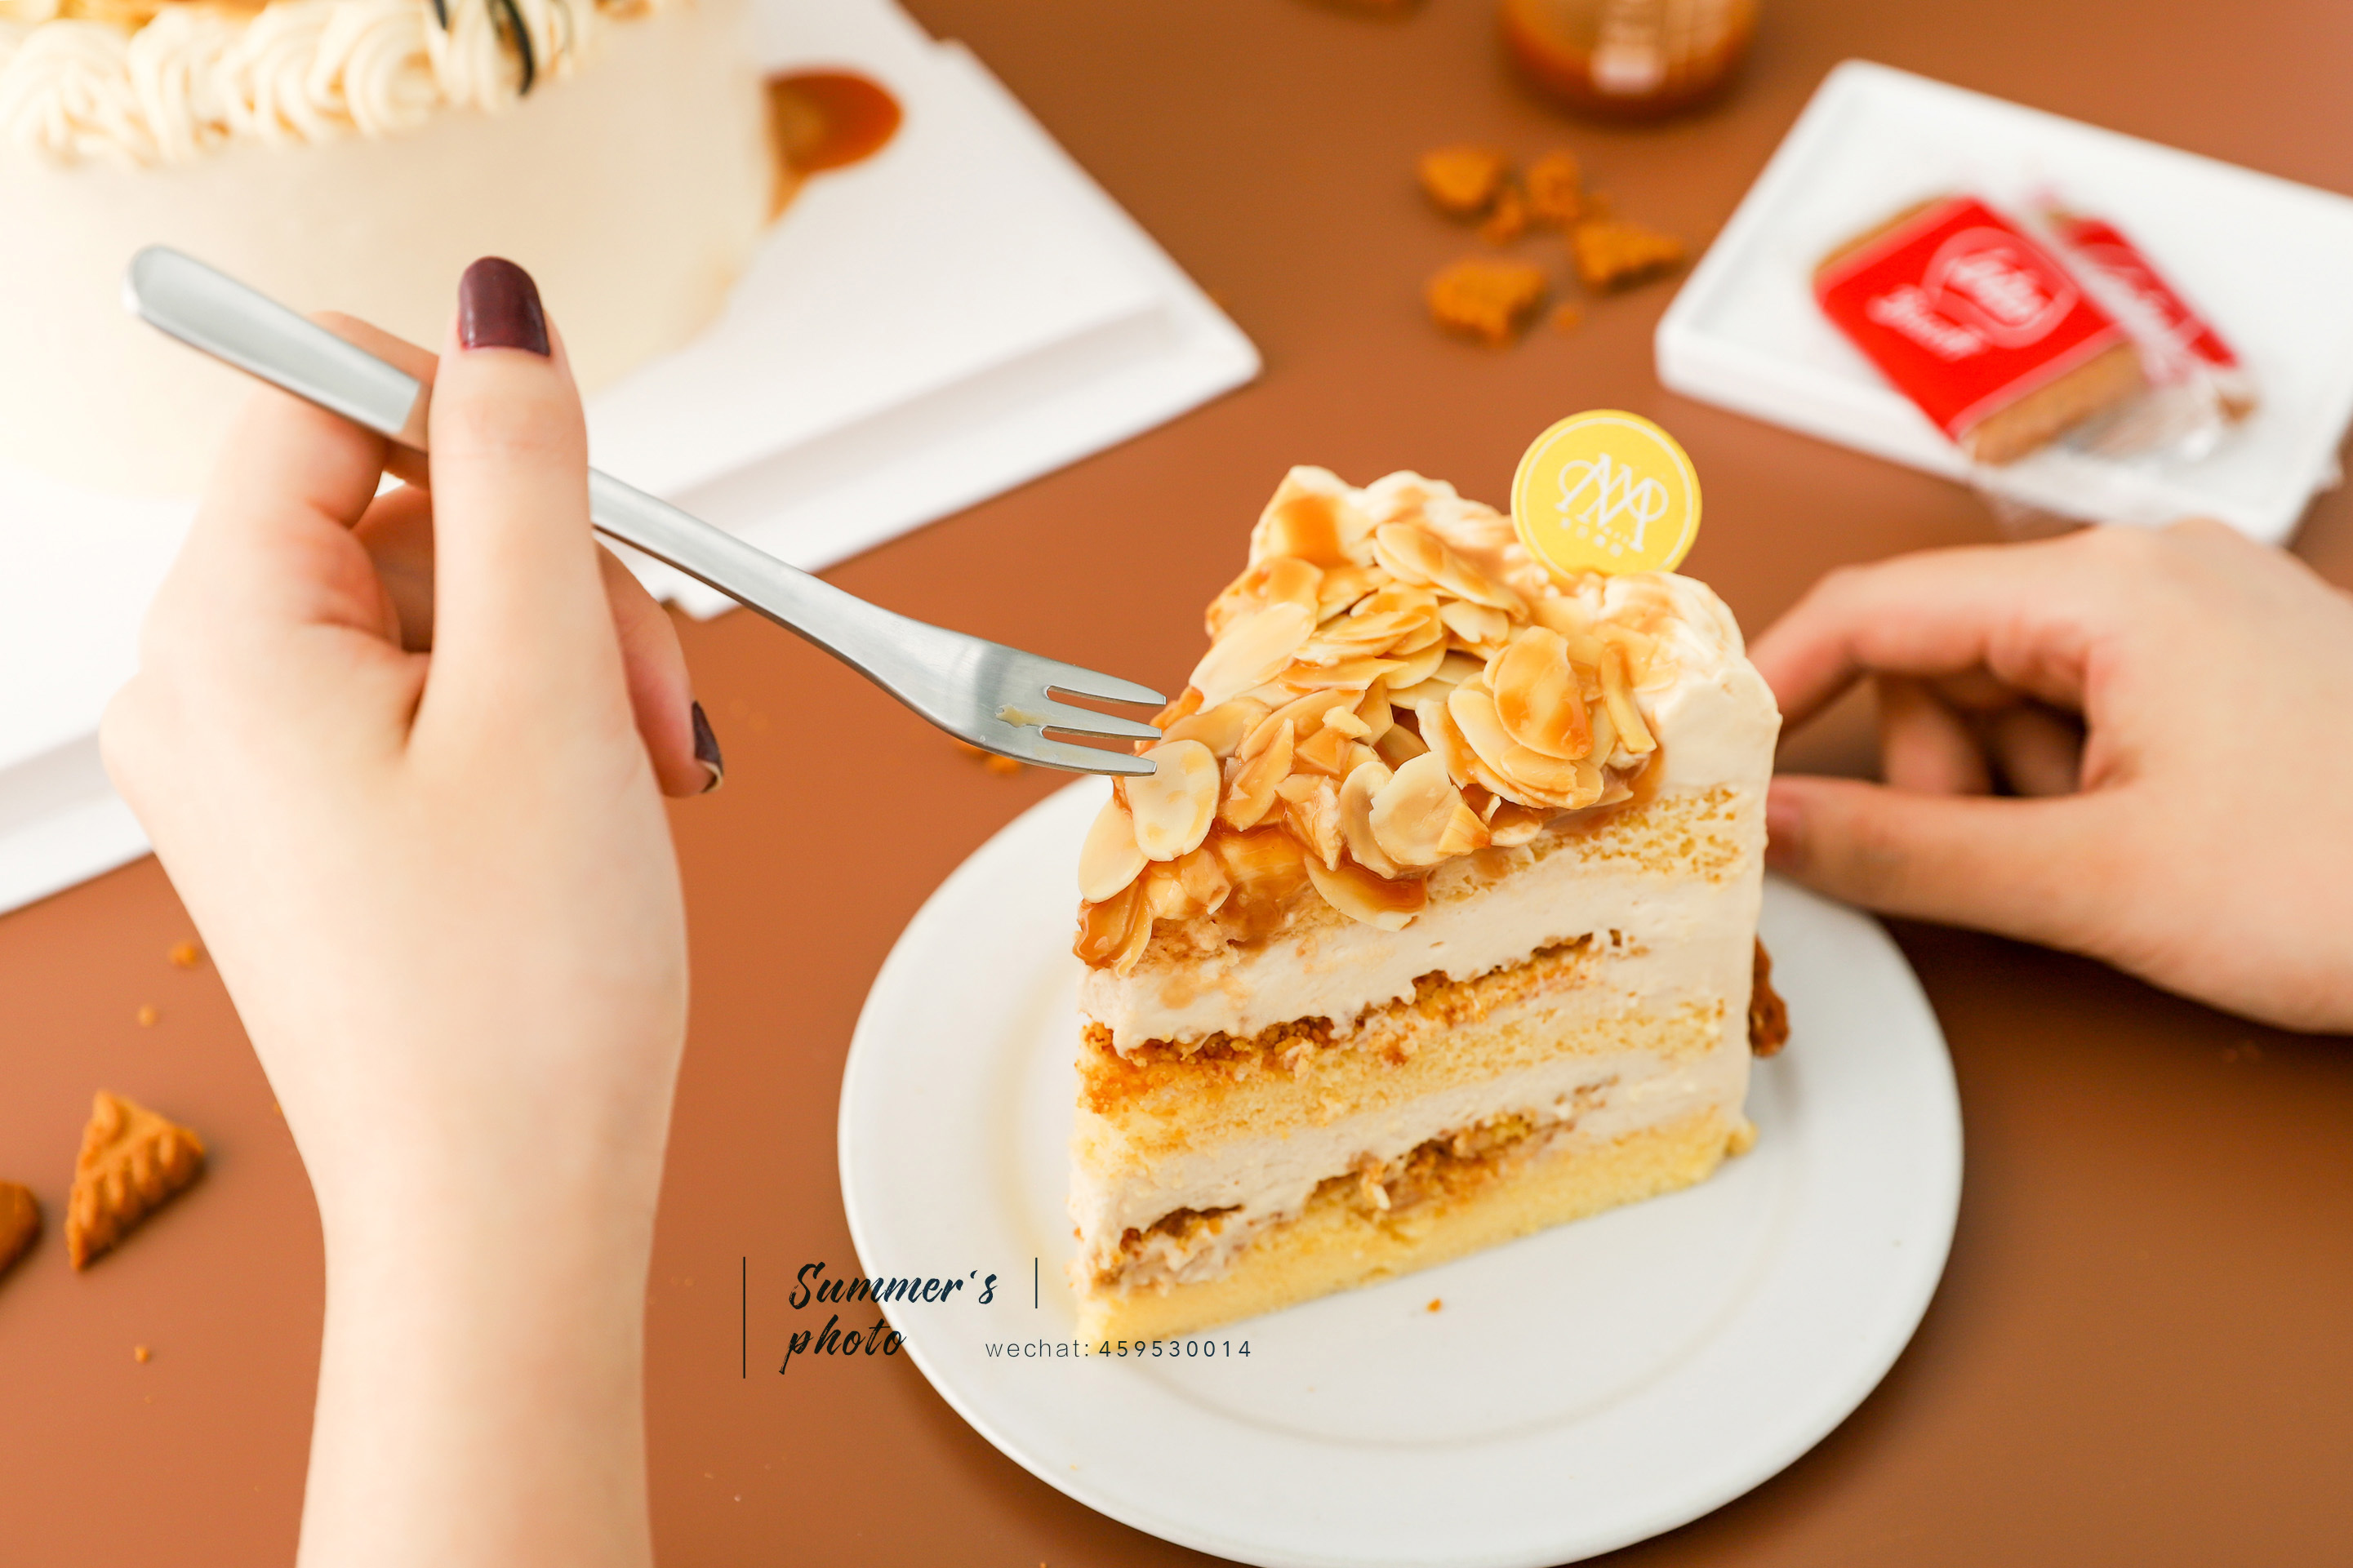 WSM @ Kitchen: 杏仁蛋糕 Almond Cake